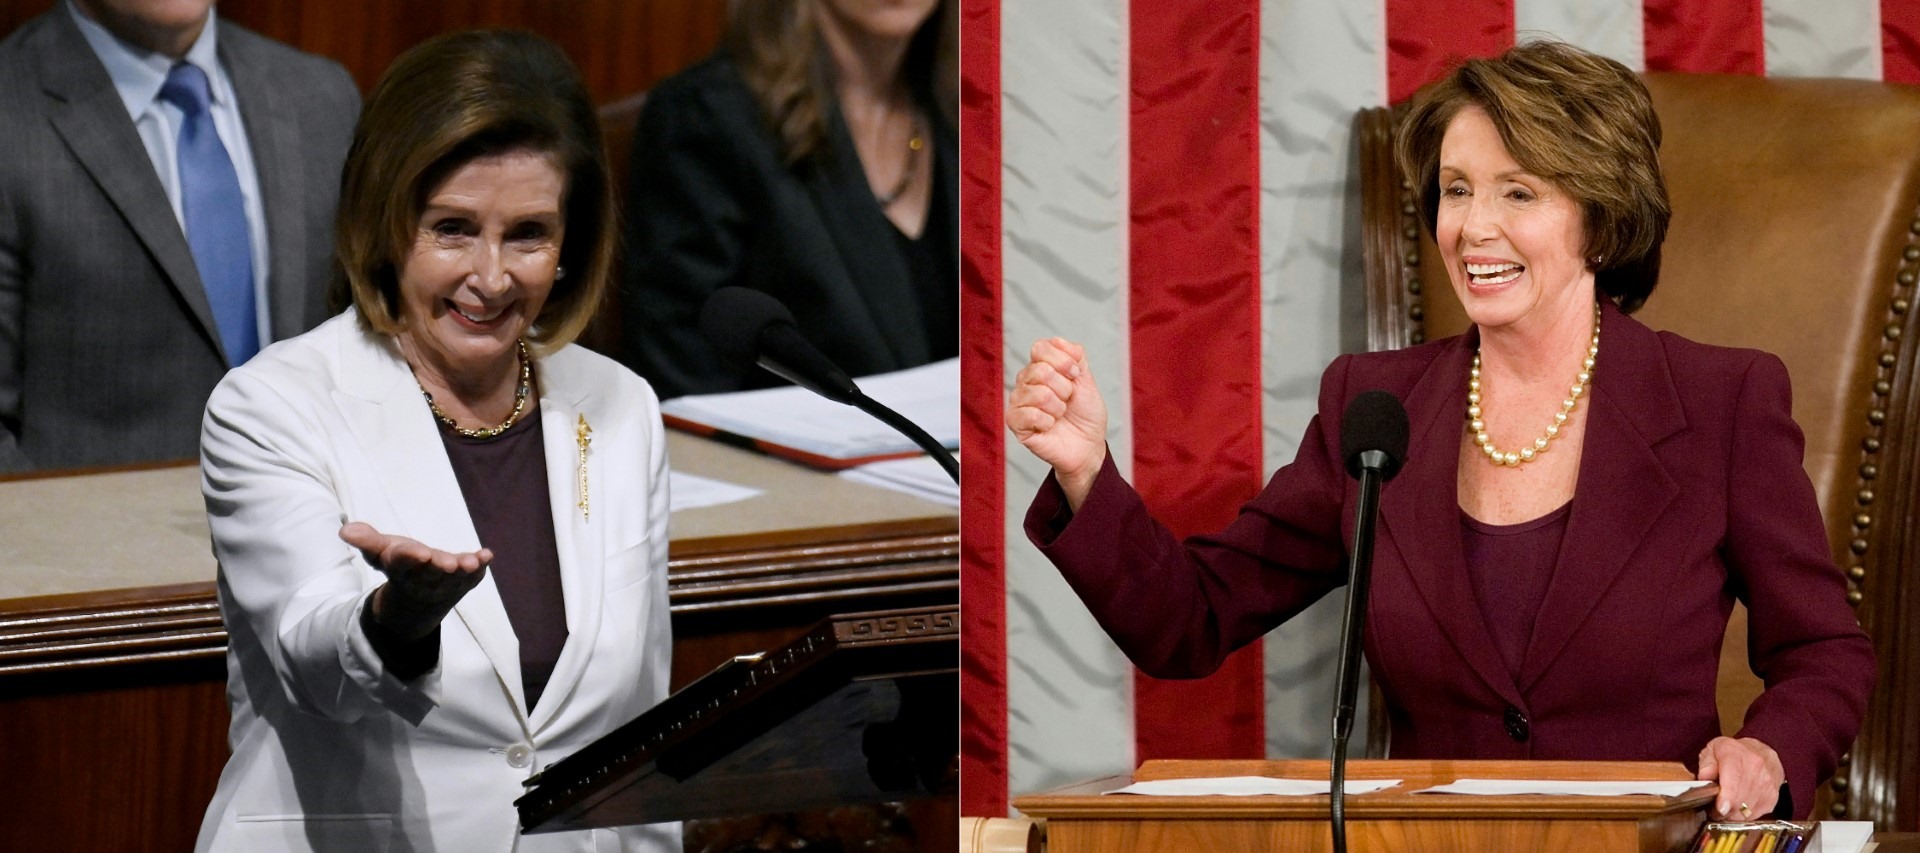 Bà Nancy Pelosi tại Tòa nhà Quốc hội Mỹ ở Washington D.C, ngày 4.1.2007 (phải) và ngày 17.11.2022 (trái). Ảnh: AFP